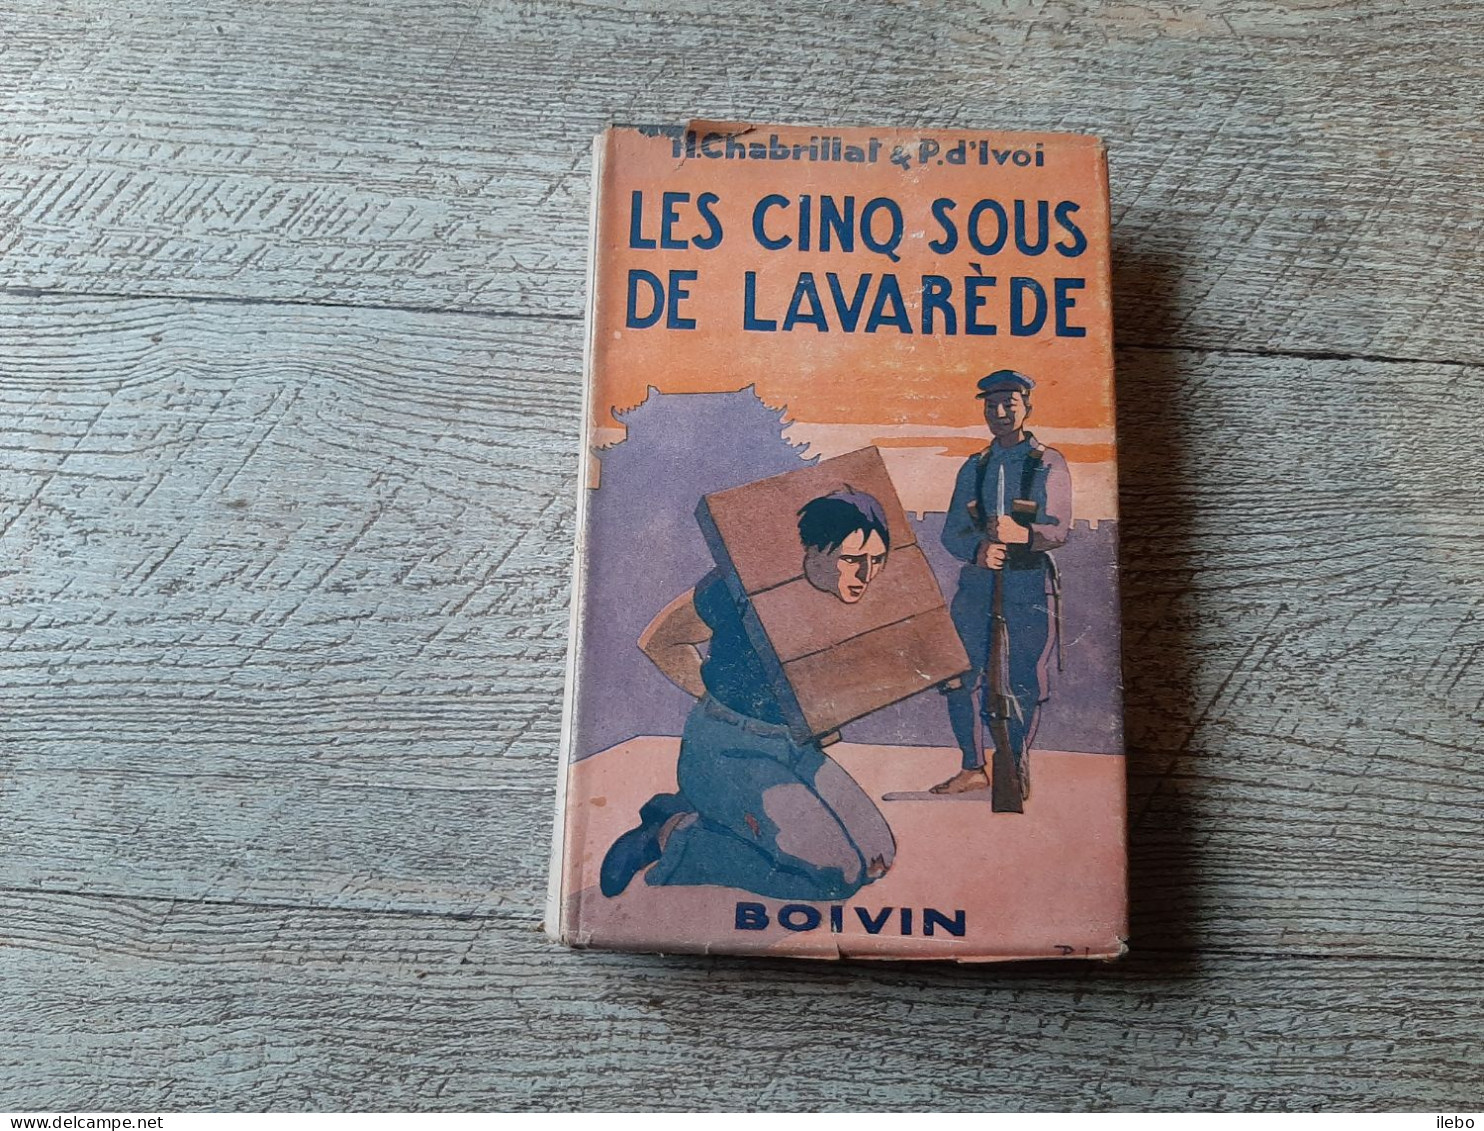 Les Cinq Sous De Lavarède Paul D'ivoi Et Chabrillat Boivin 1948 Dessins Dufour - Aventura